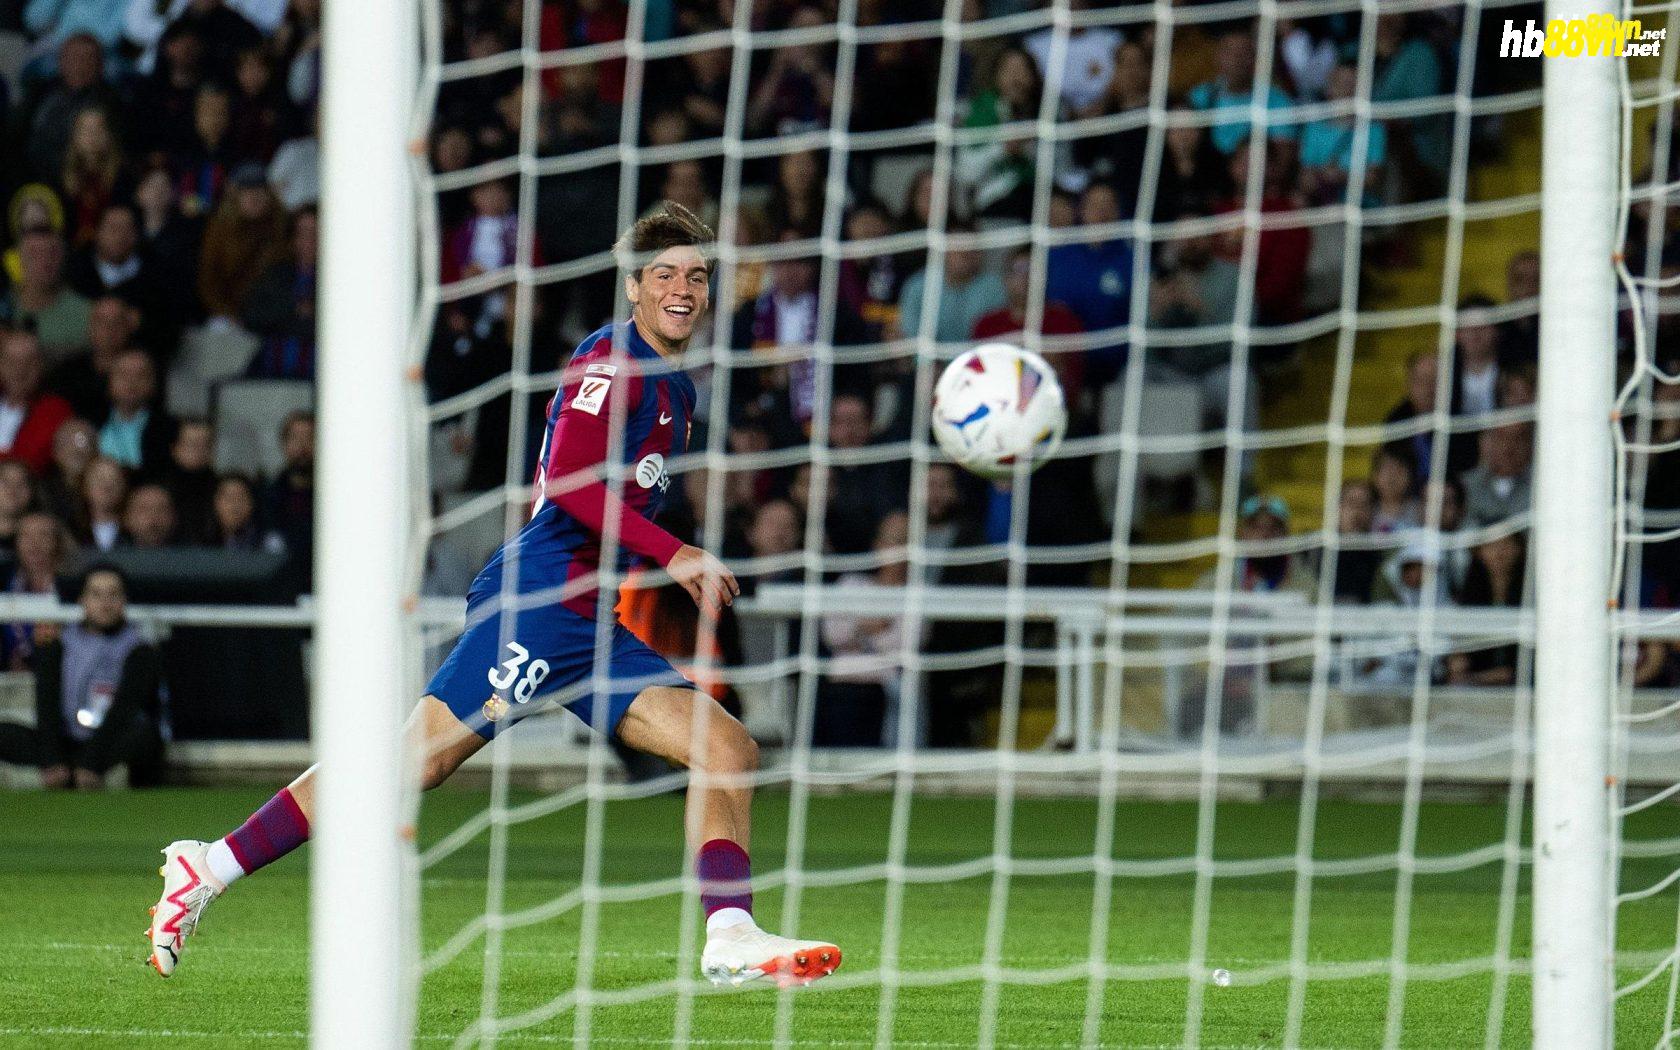 Guiu mừng khi bóng đi vào lưới sau cú dứt điểm ở phút 80 trận Barca hạ Bilbao 1-0 ở vòng 10 La Liga trên sân Montjuic, Barcelona ngày 22/10. Ảnh: fcbarcelona.com